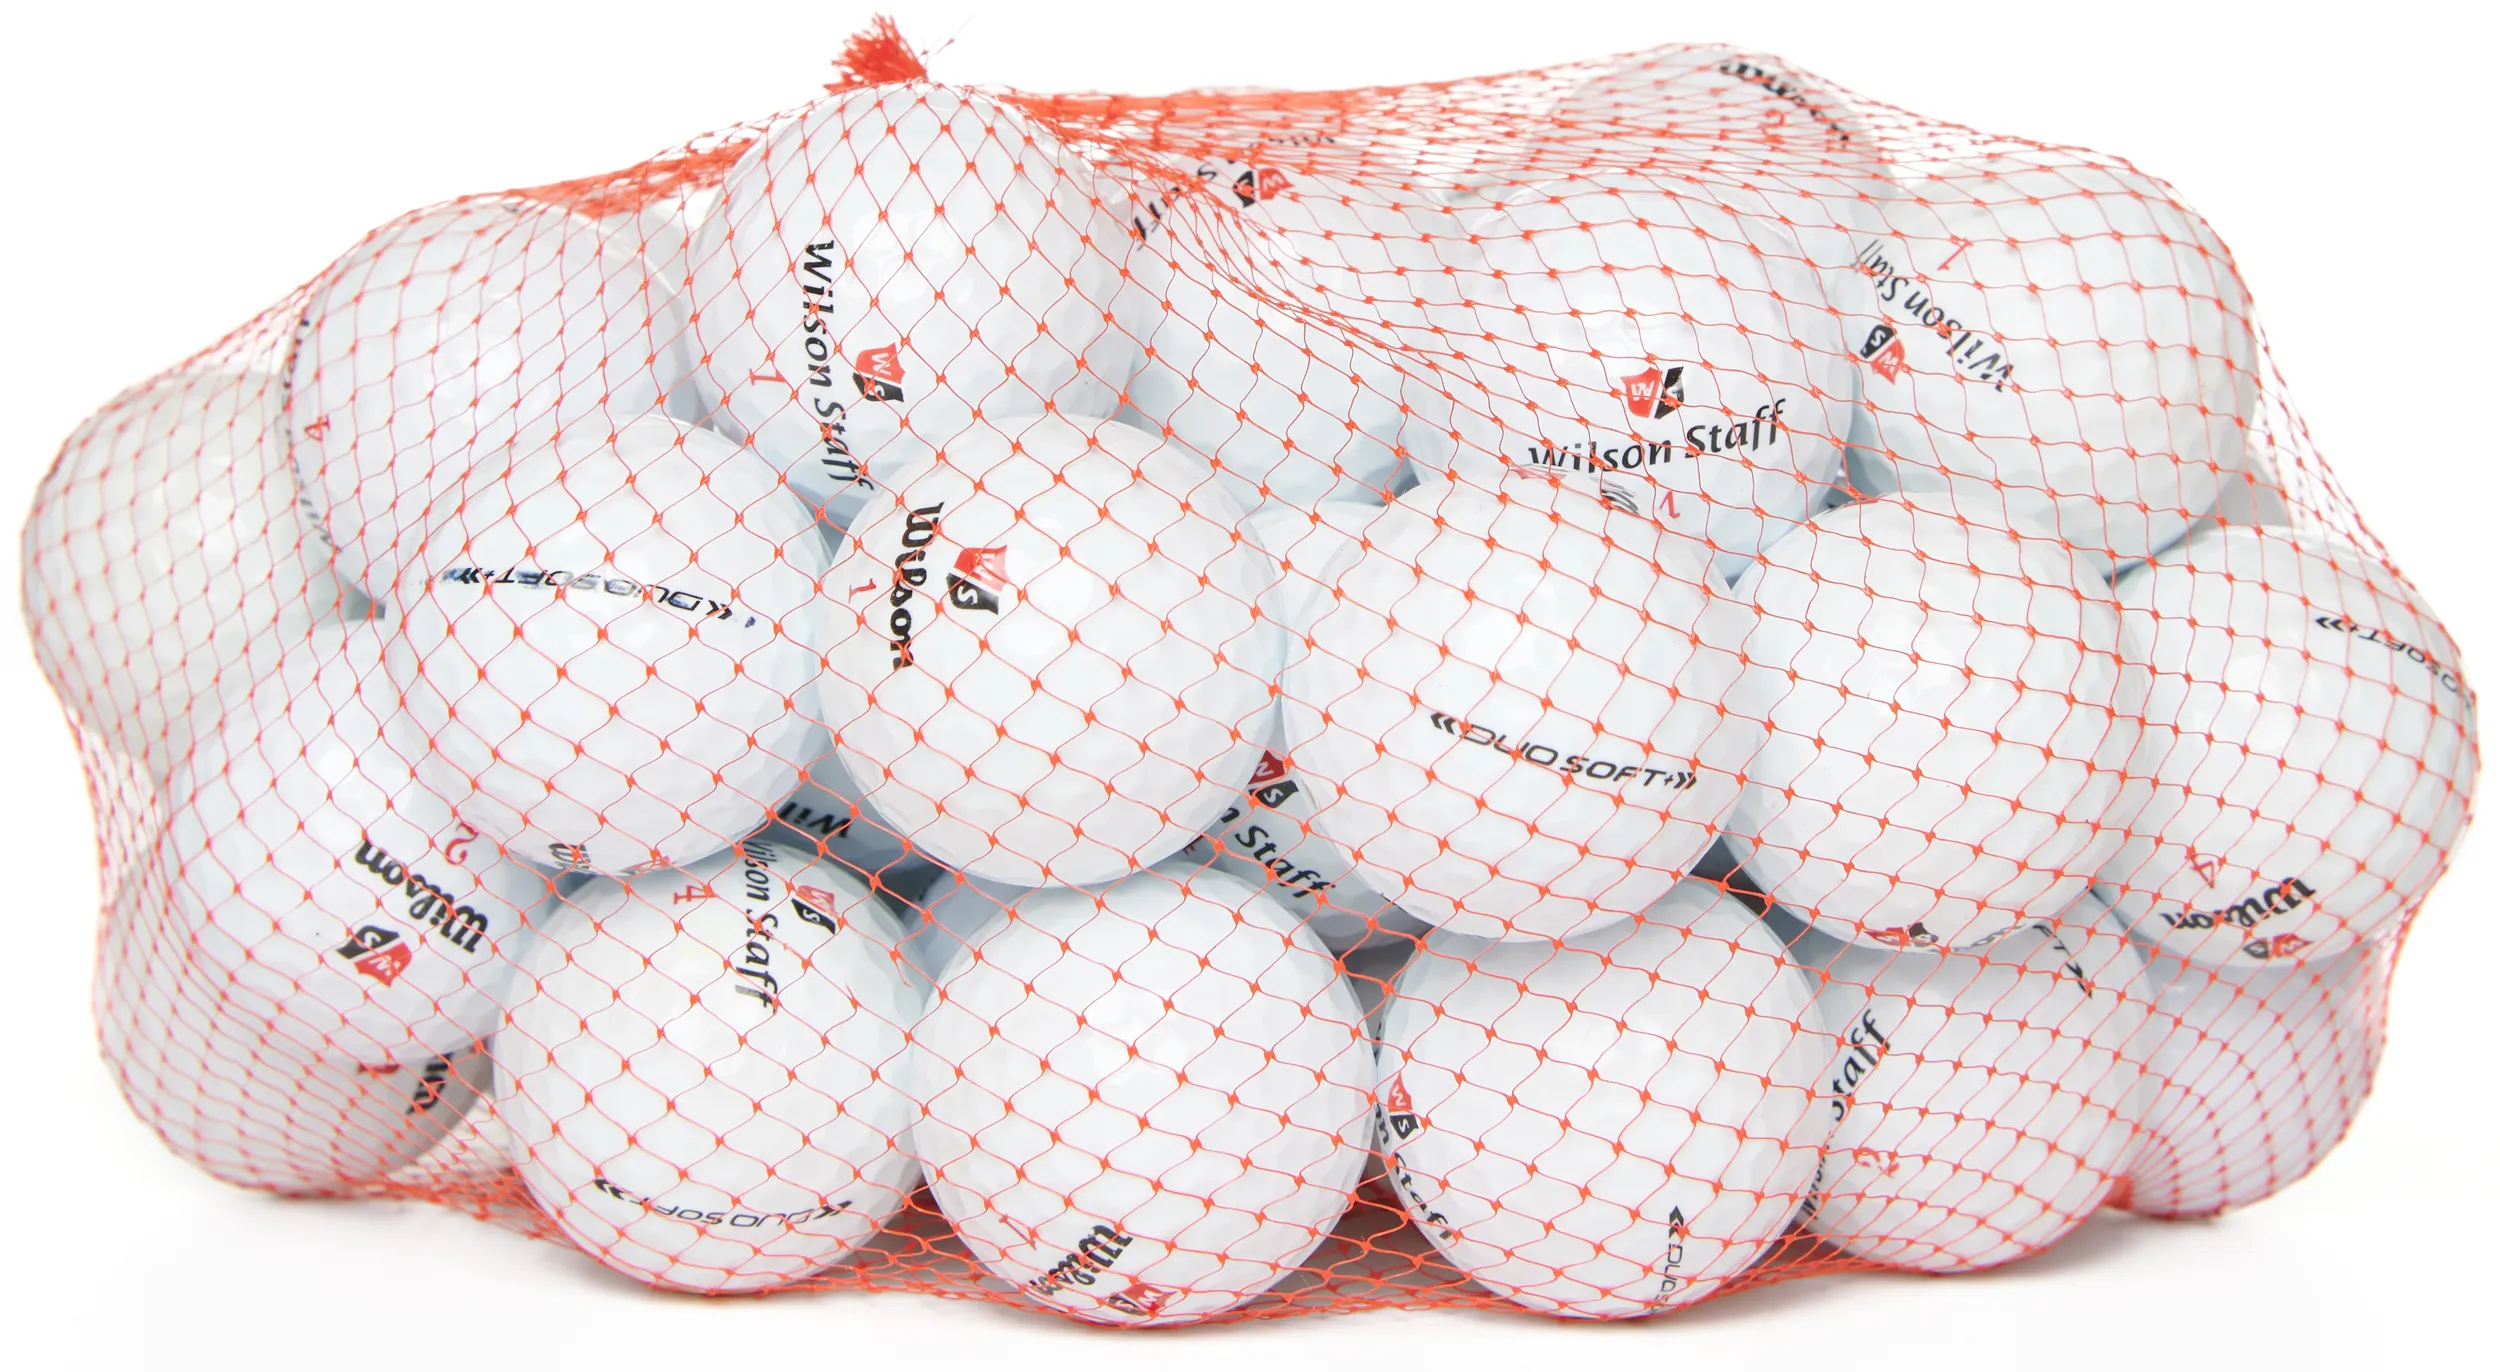 50 Wilson DUO Soft Lakeballs